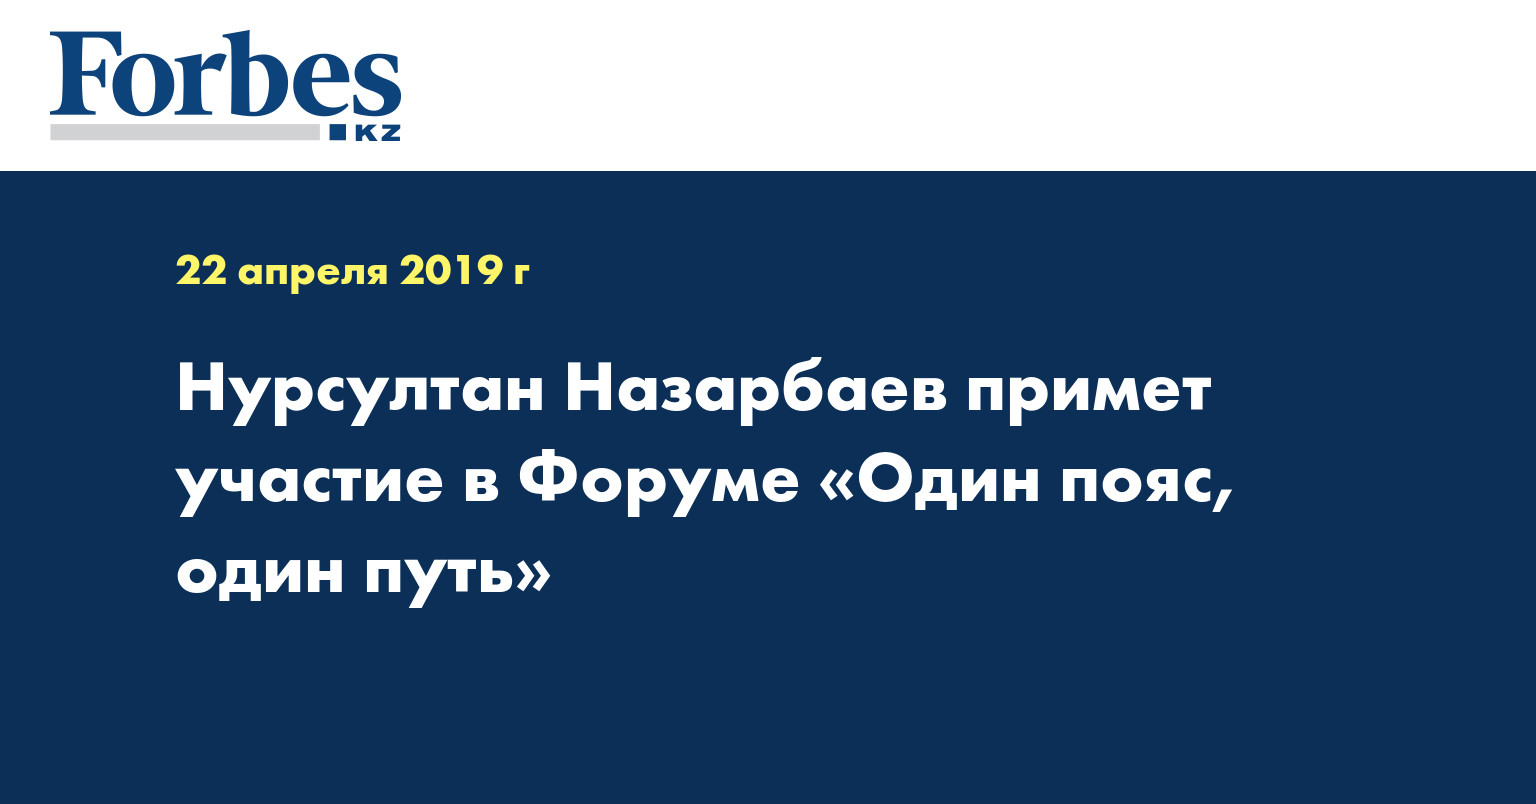 Нурсултан Назарбаев примет участие в Форуме «Один пояс, один путь»